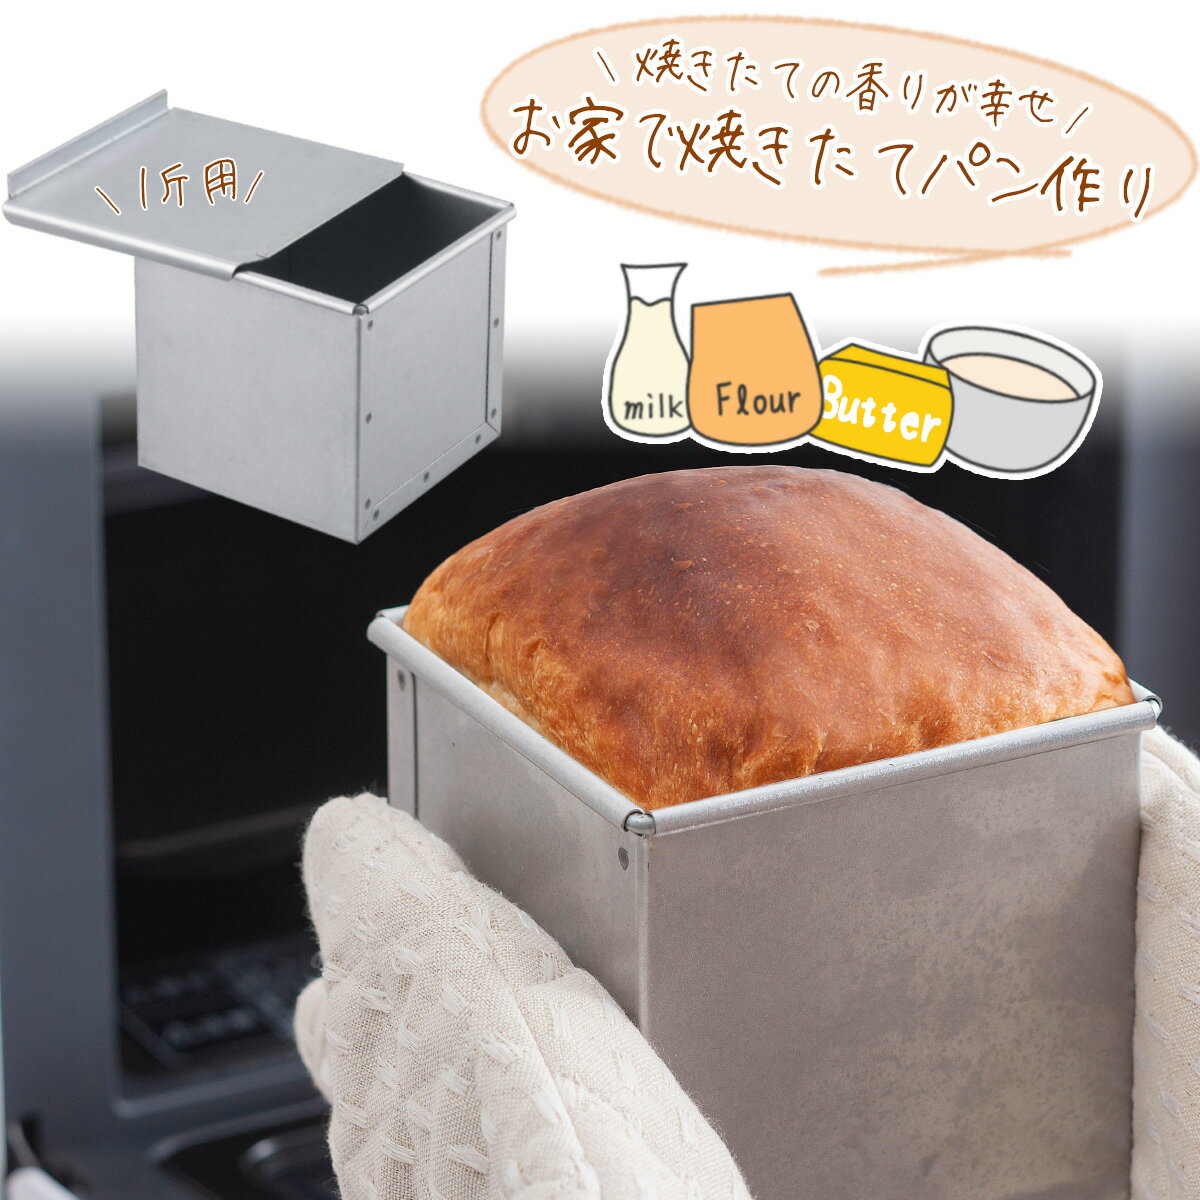 パン焼 フタ付 1斤日本製 パン型 型 製パン 高級パン食パン 角食パン キューブパン 手作り焼きたて パン 手ごねパン 朝食ホームベーカリー インスタ 映えパン作り パン屋